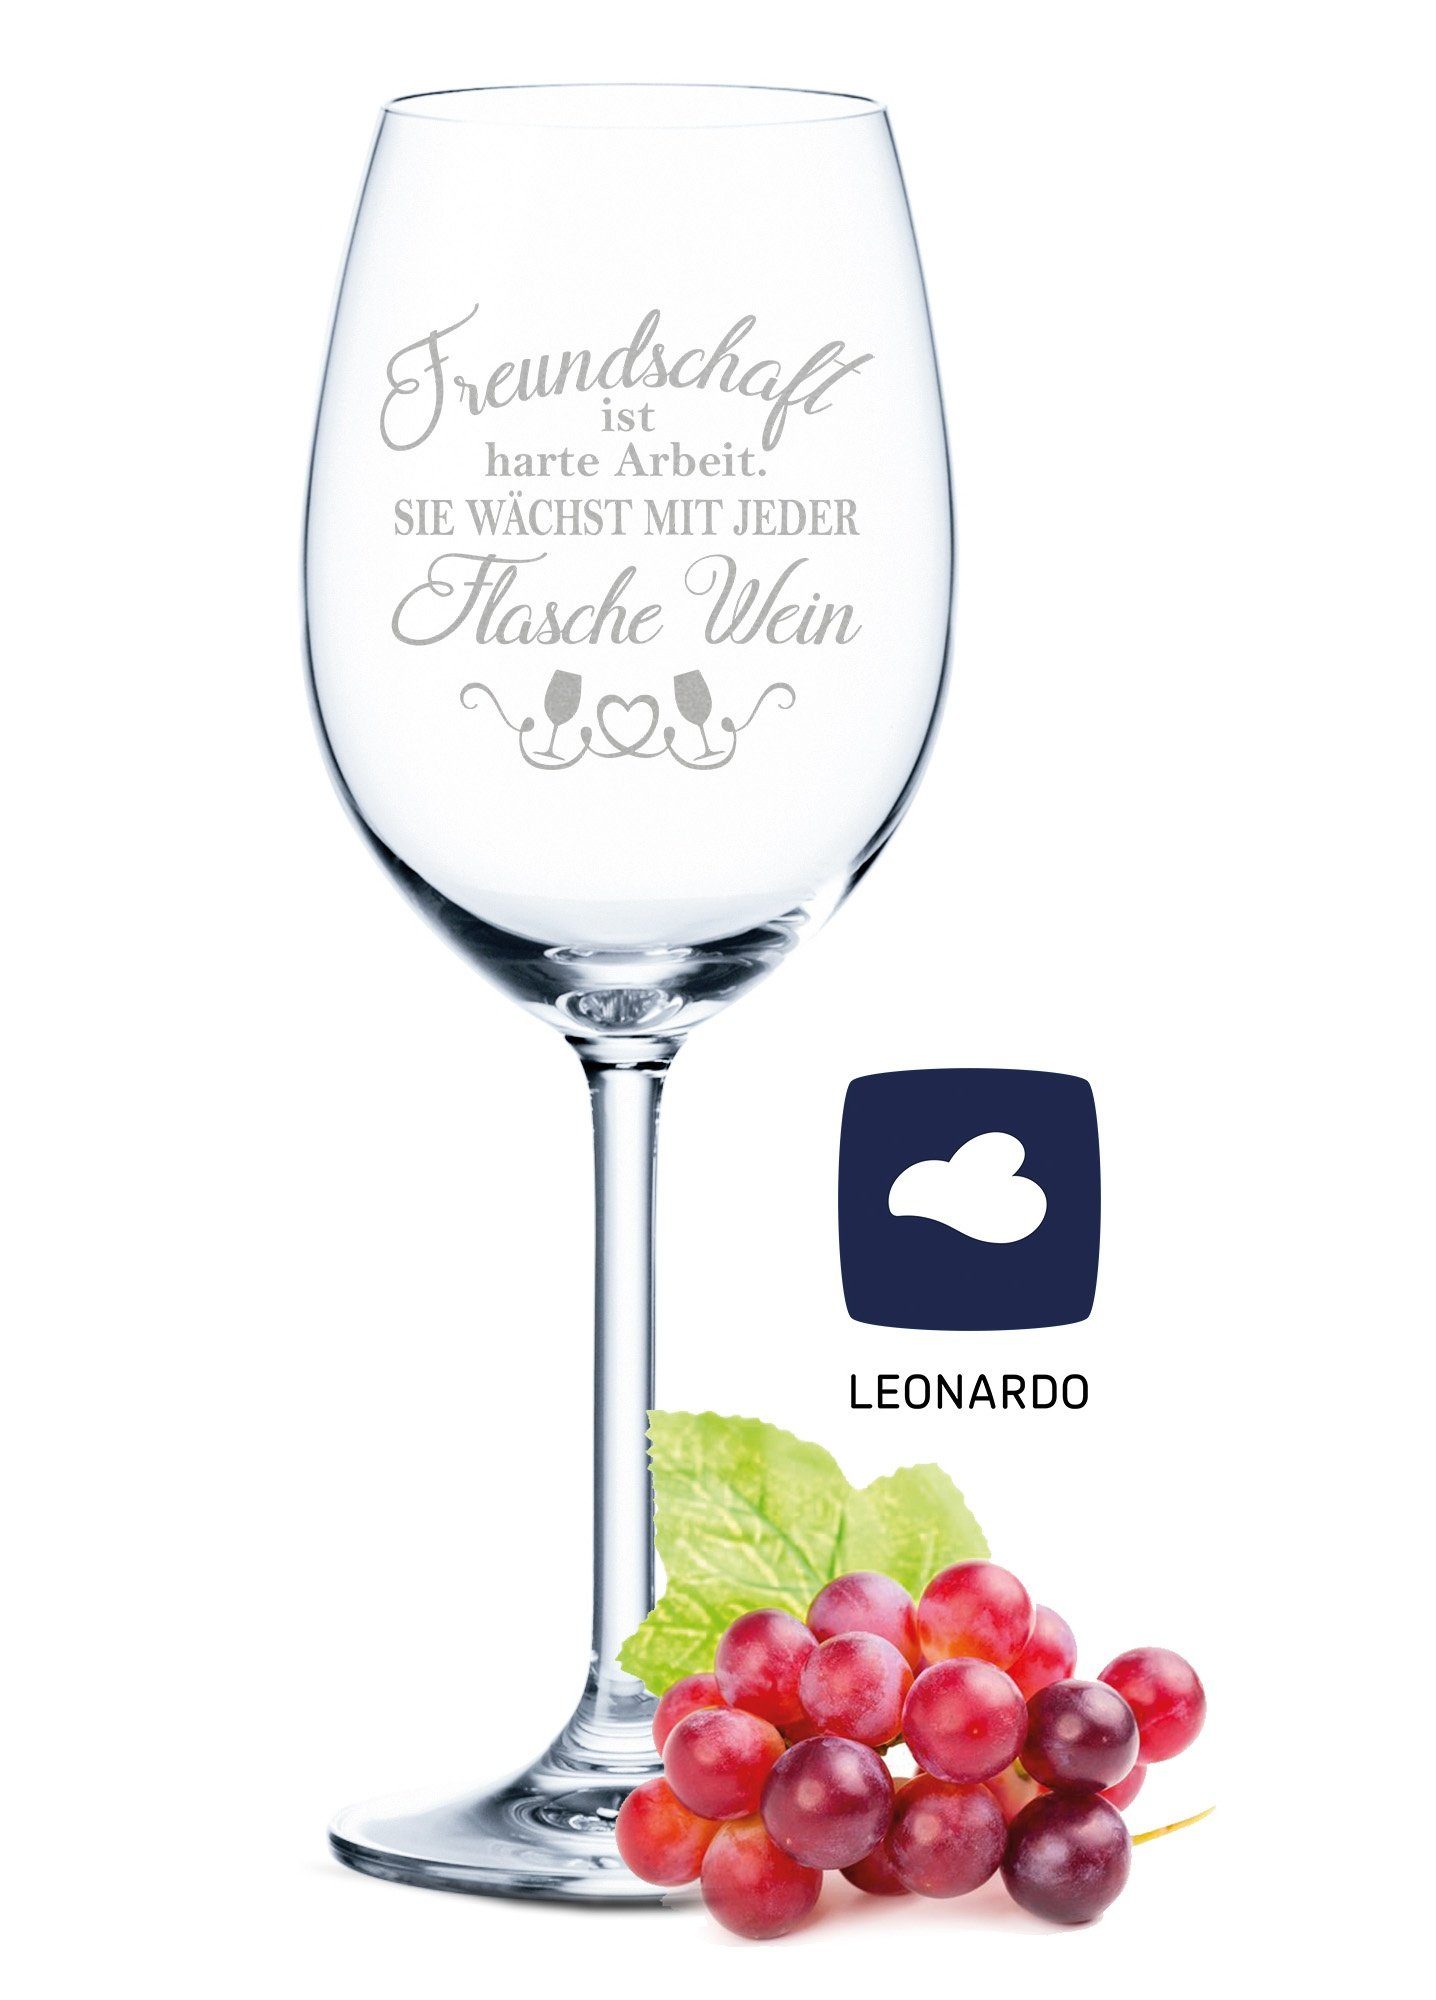 GRAVURZEILE Rotweinglas Leonardo Weinglas mit Gravur - Freundschaft ist  harte Arbeit, Glas, graviertes Geschenk für Partner, Freunde & Familie